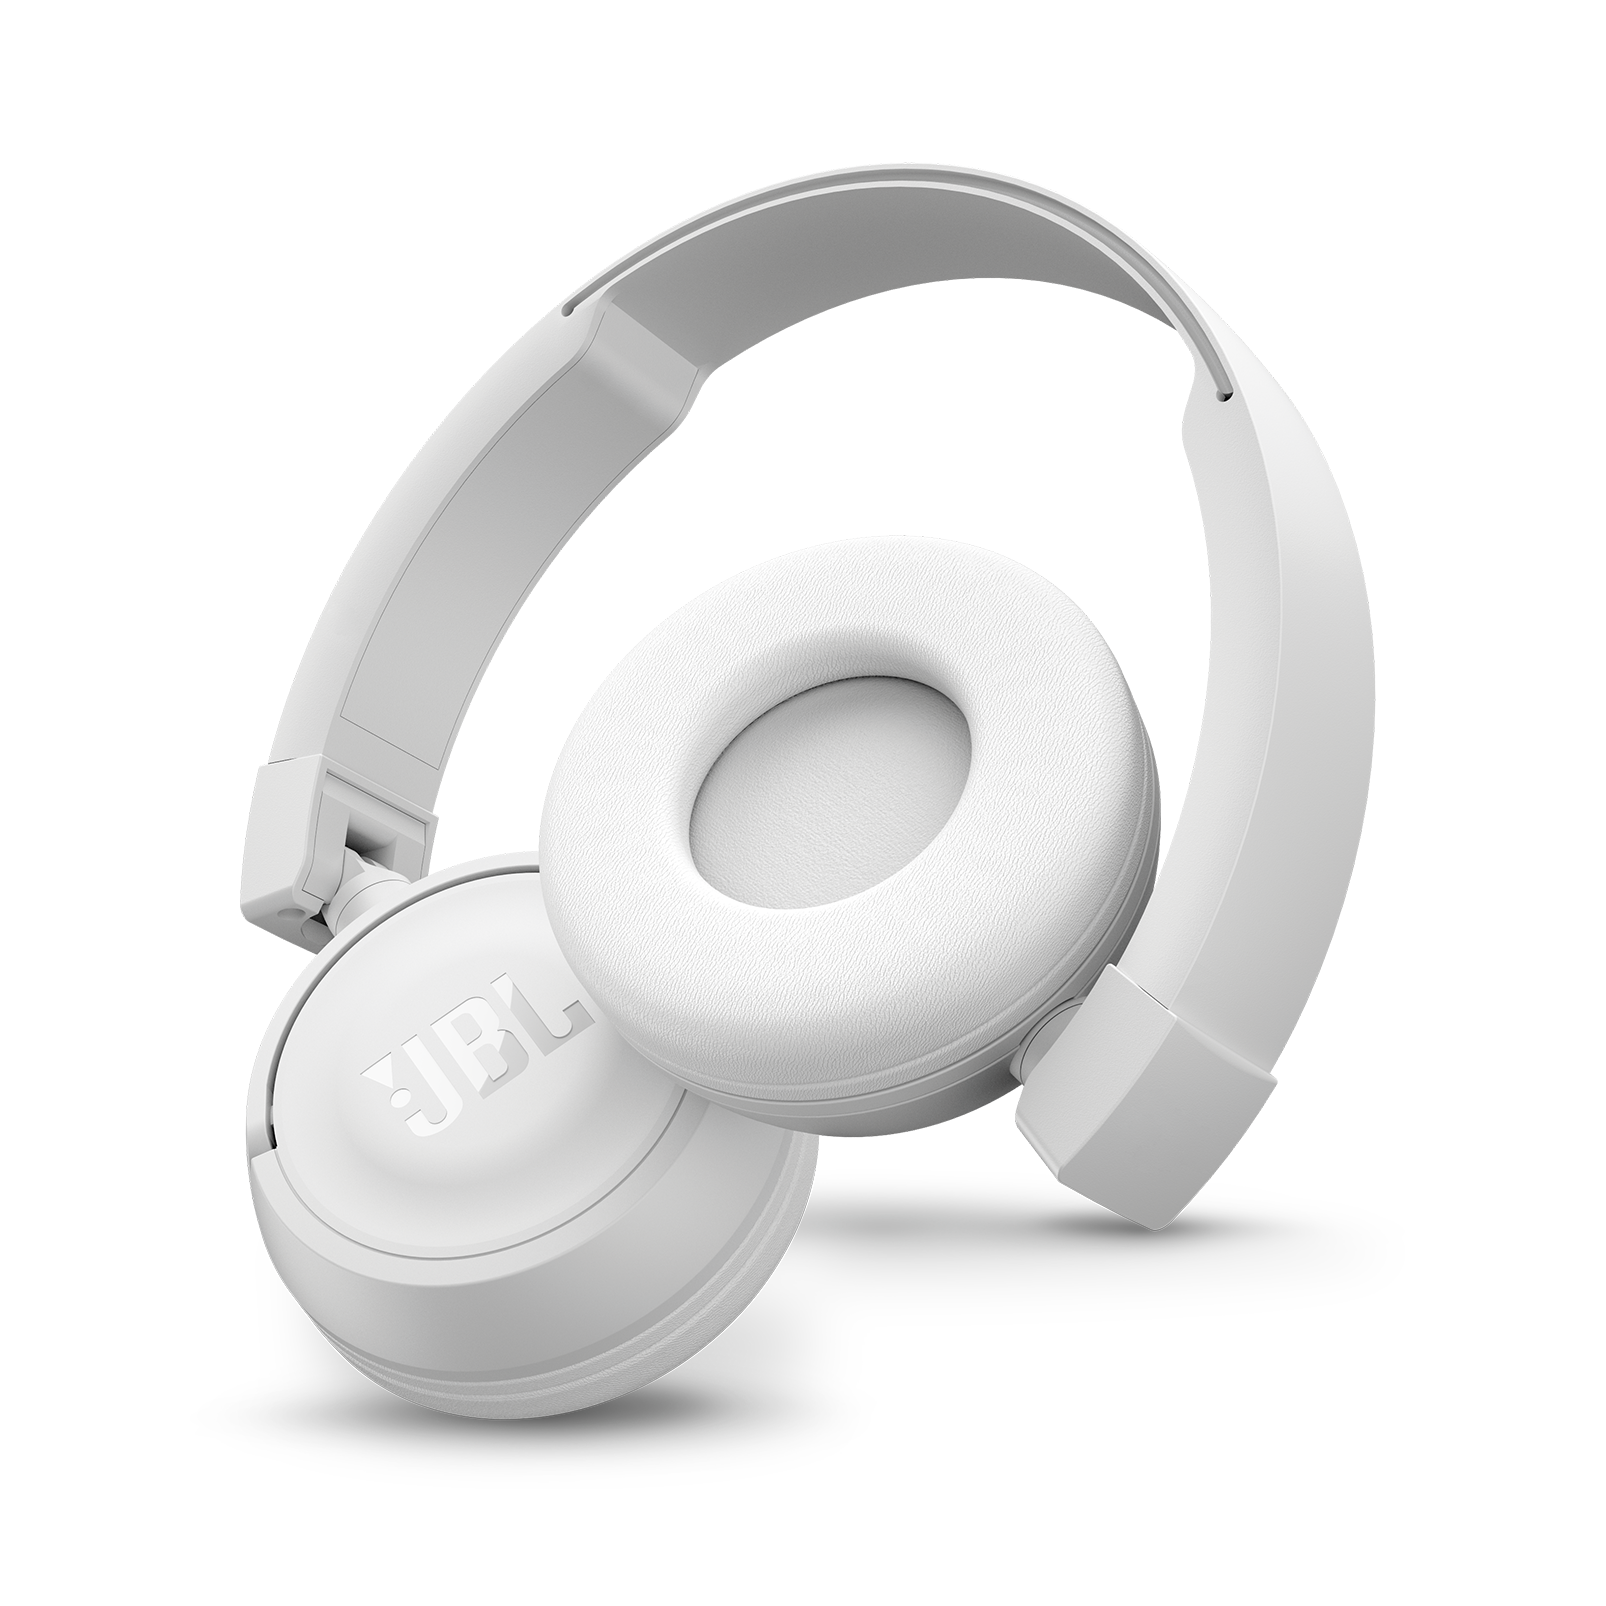 JBL T450BT - White - Wireless on-ear headphones - Detailshot 1